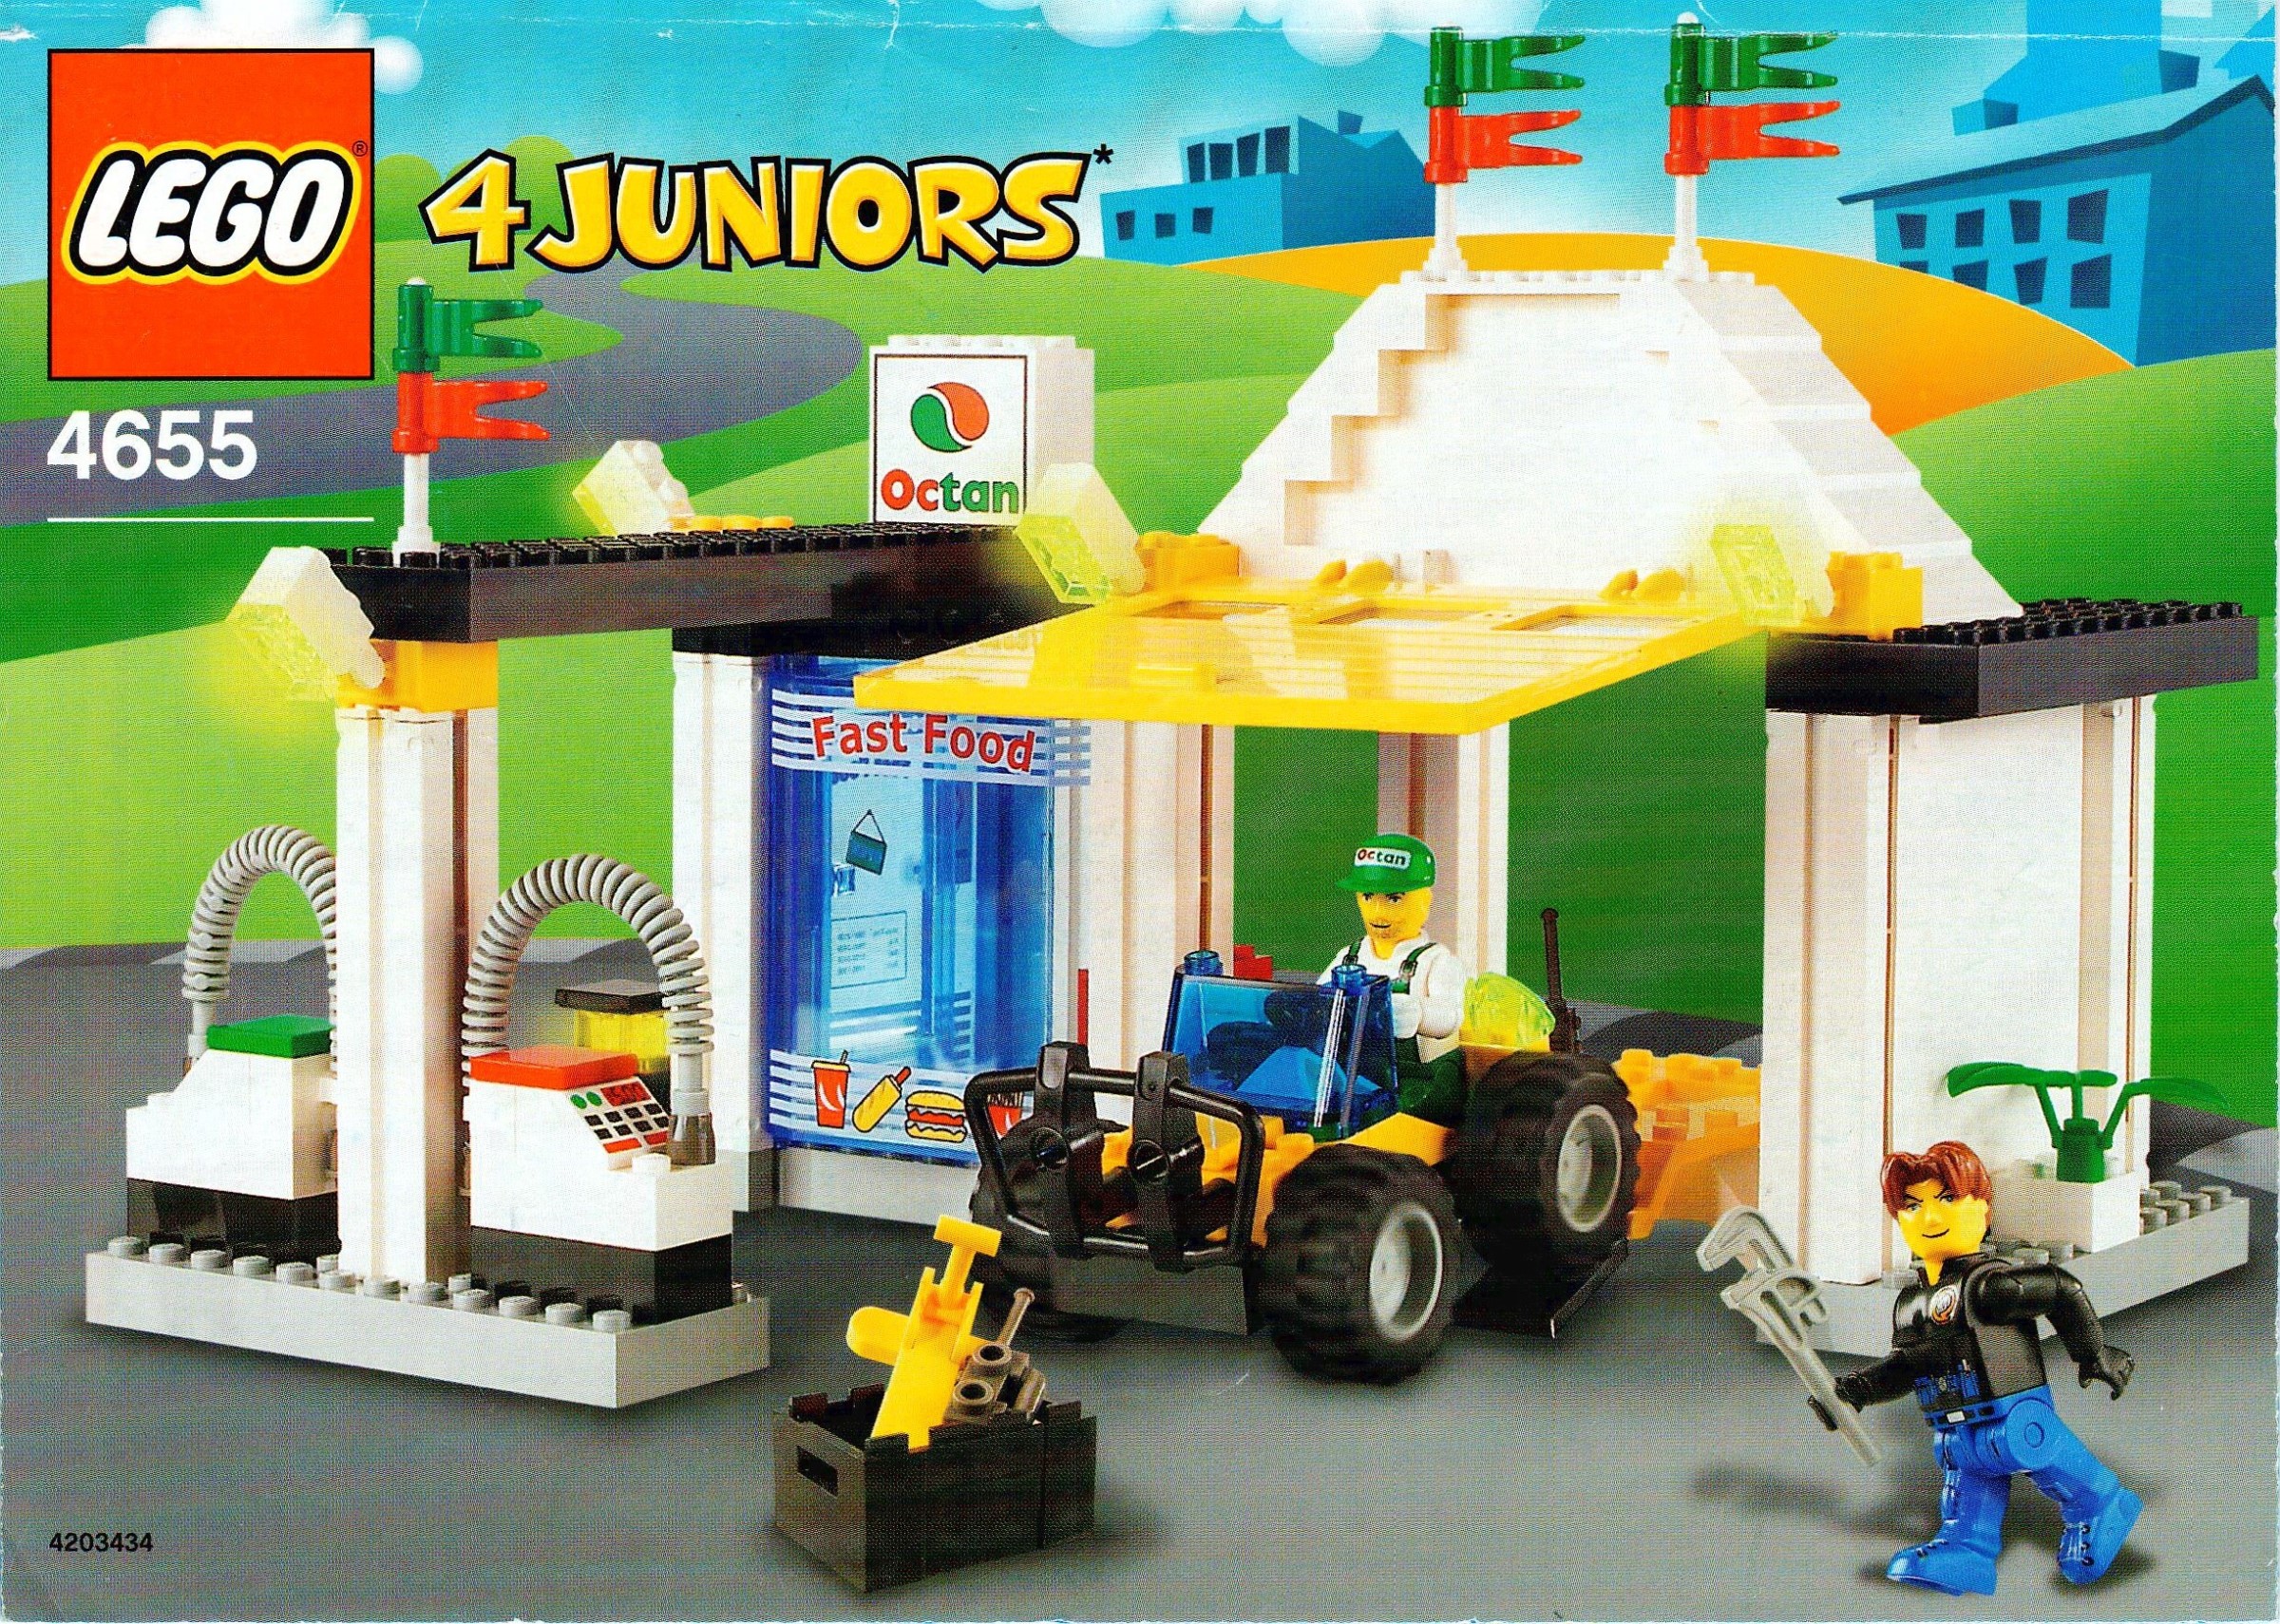 kærlighed Mindst efterfølger LEGO 4 Juniors 2003 | Brickset